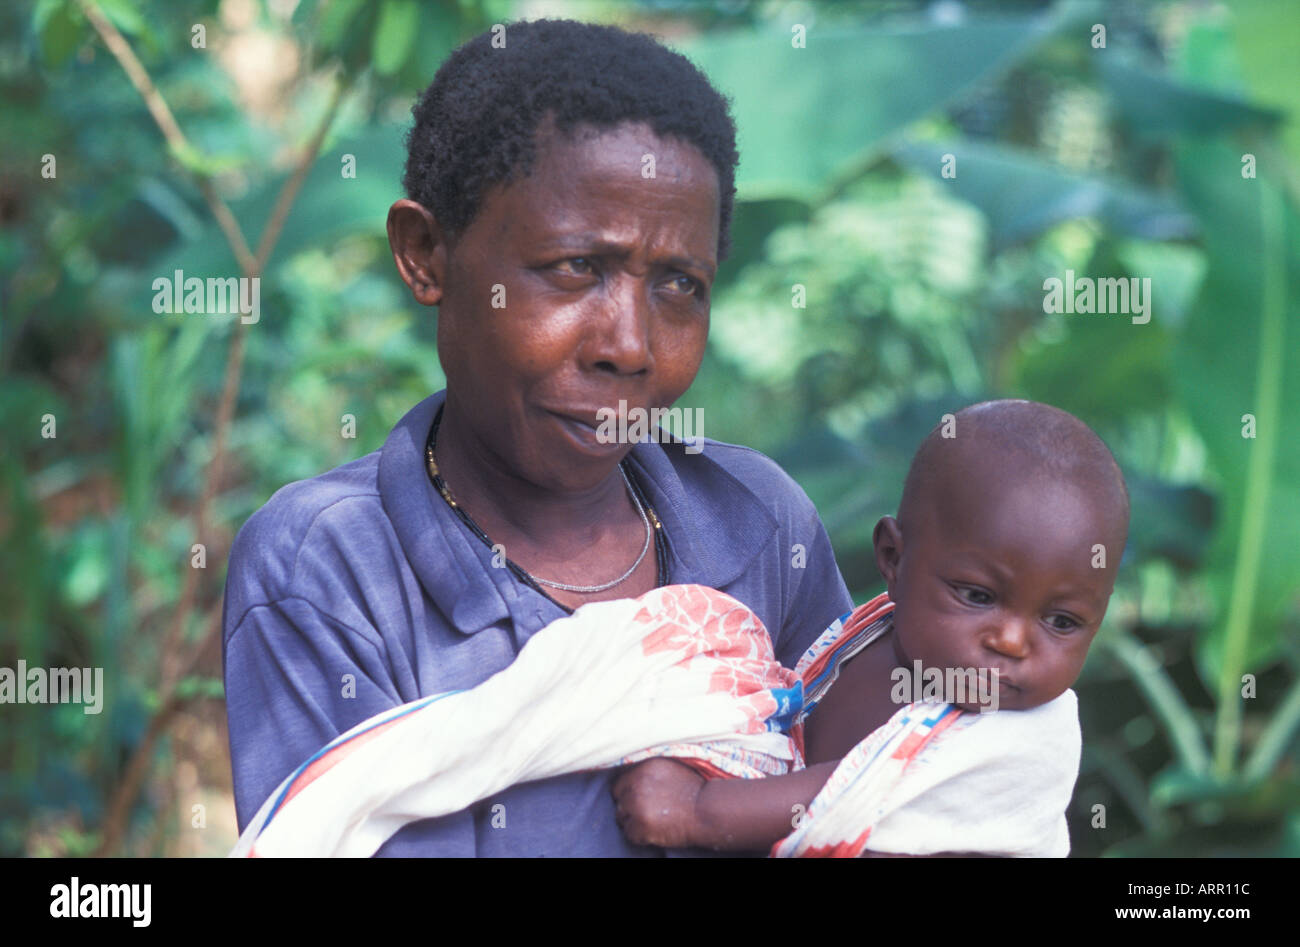 AFRICA KENYA KALIFI Kenyan mother with baby wrapped in kanga cloth Stock Photo